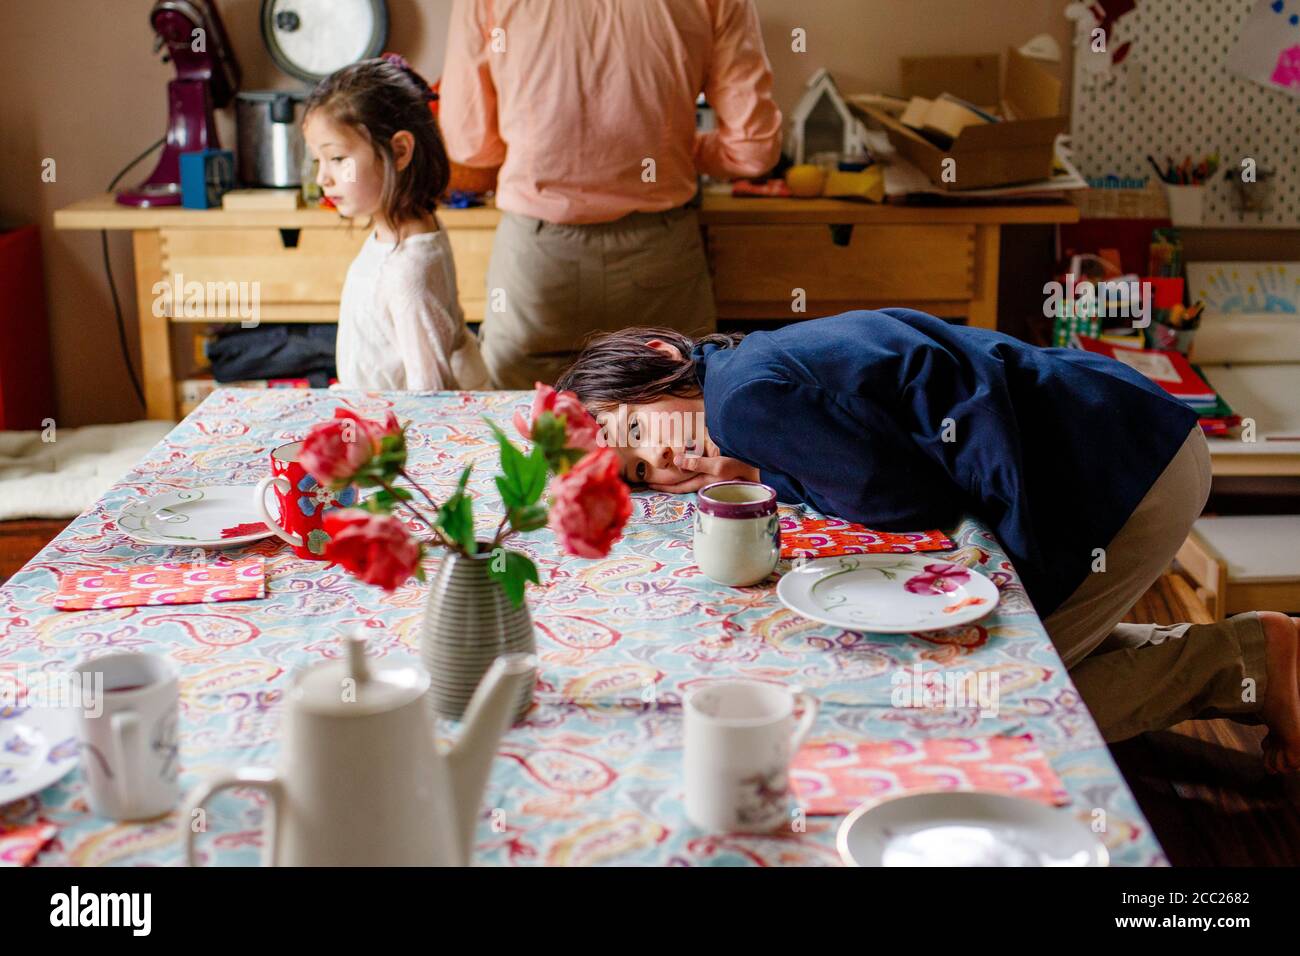 Un ragazzo in tuta si stende su un tavolo per il tè, famiglia in background Foto Stock